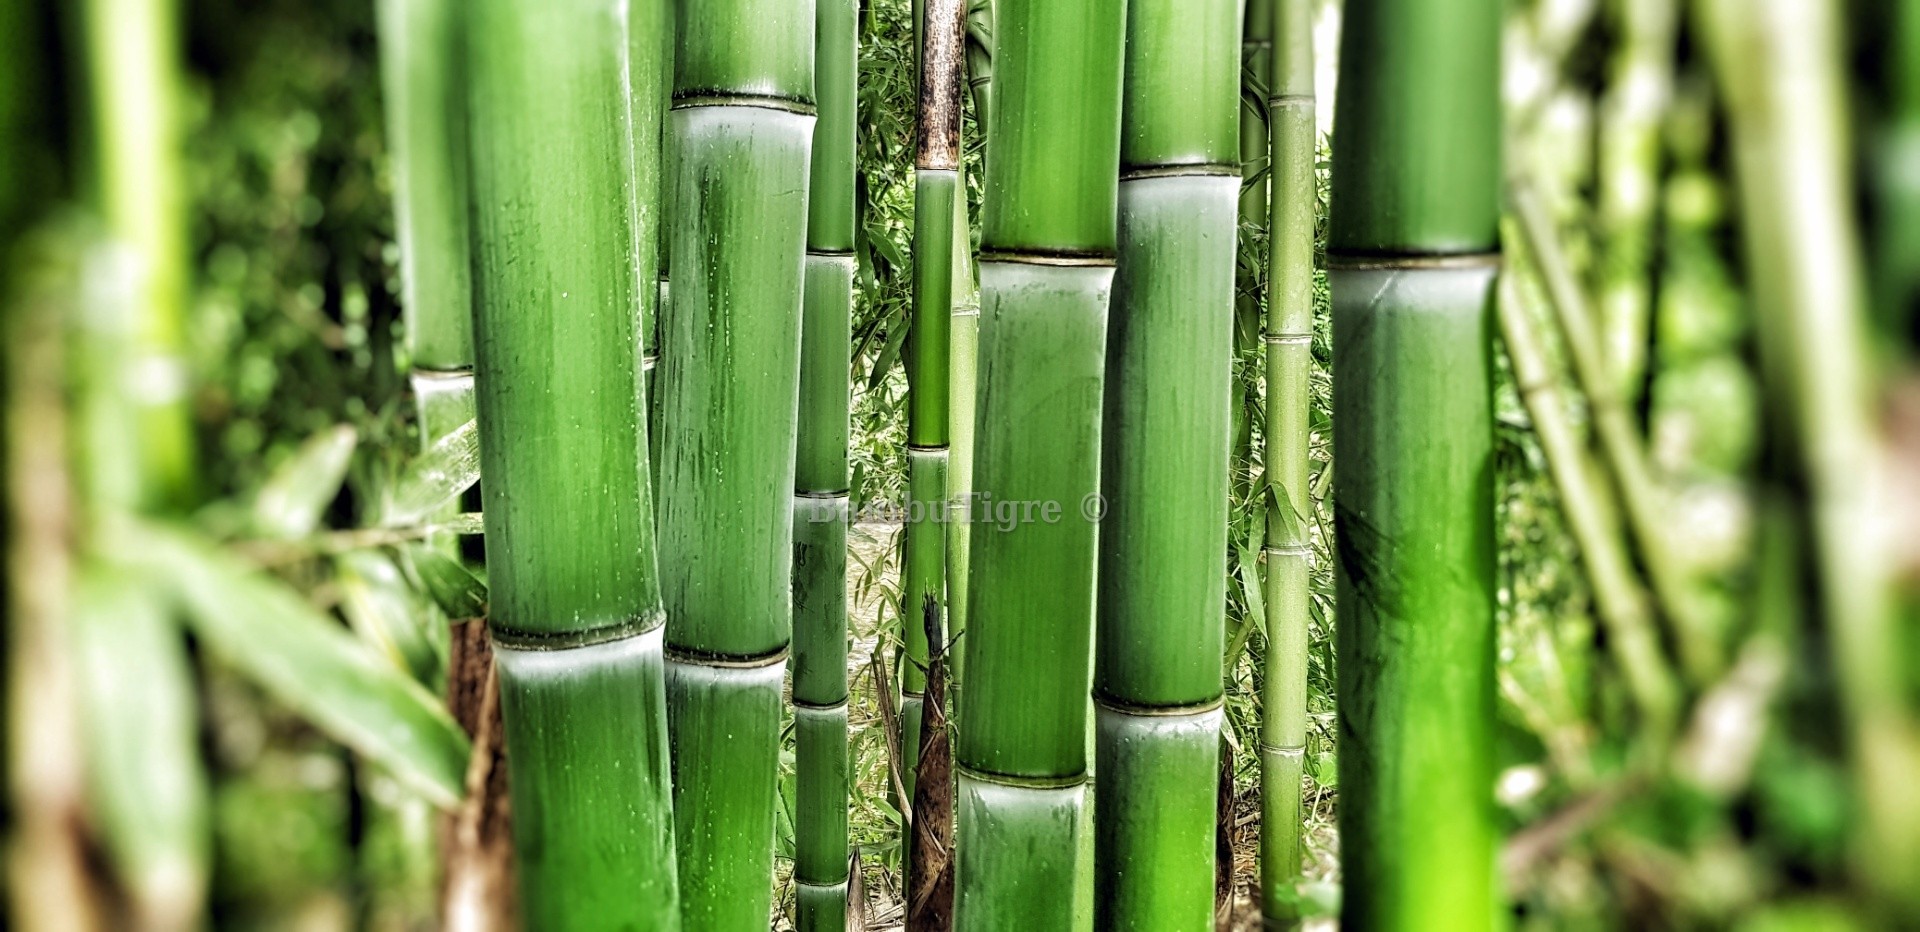 Canne di Bambù e derivati al miglior prezzo - Bambusa Shop